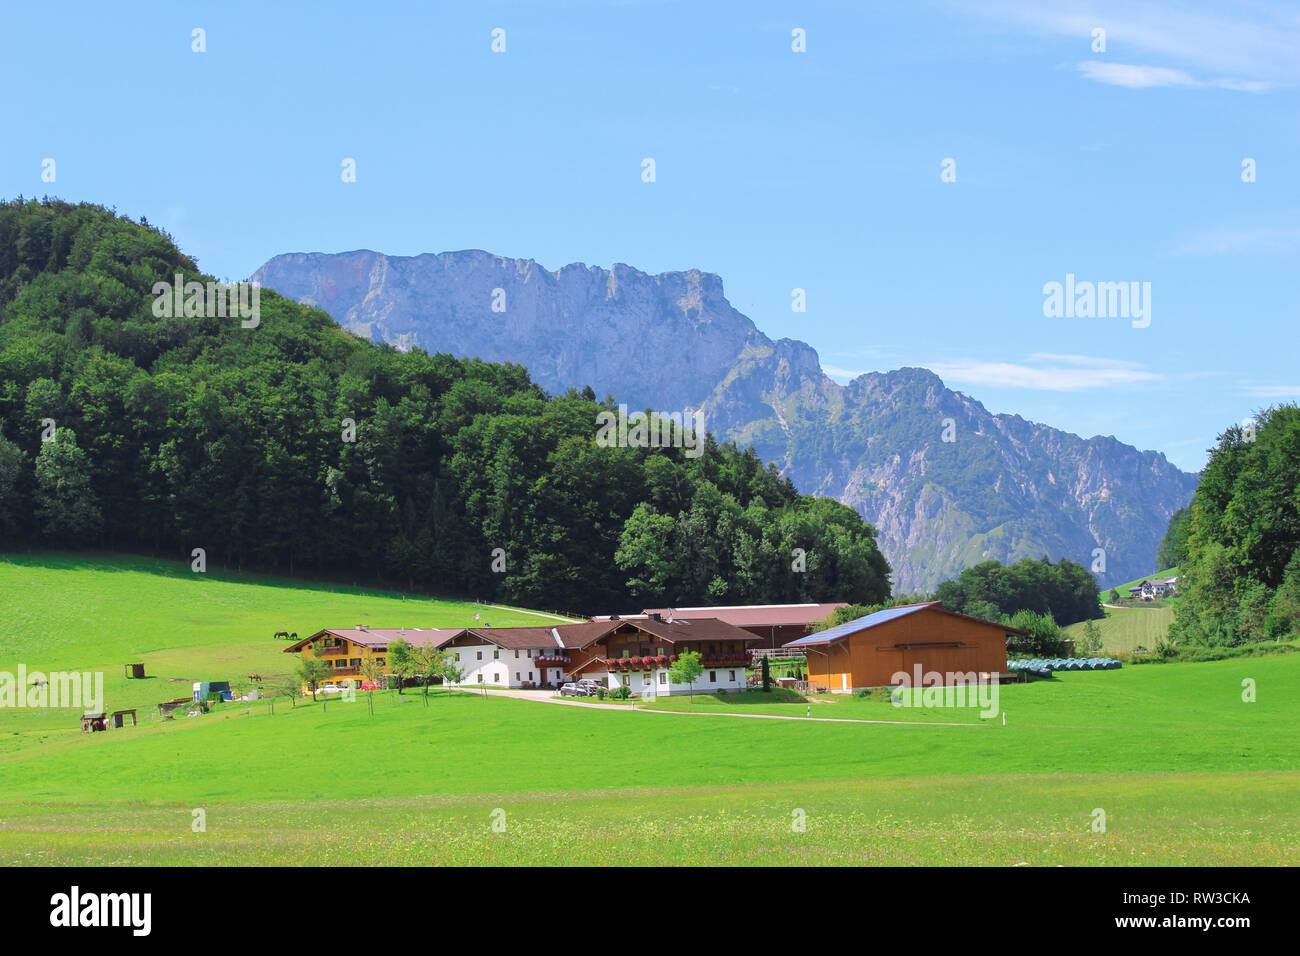 Ferme allemande avec les Alpes en arrière-plan Banque D'Images